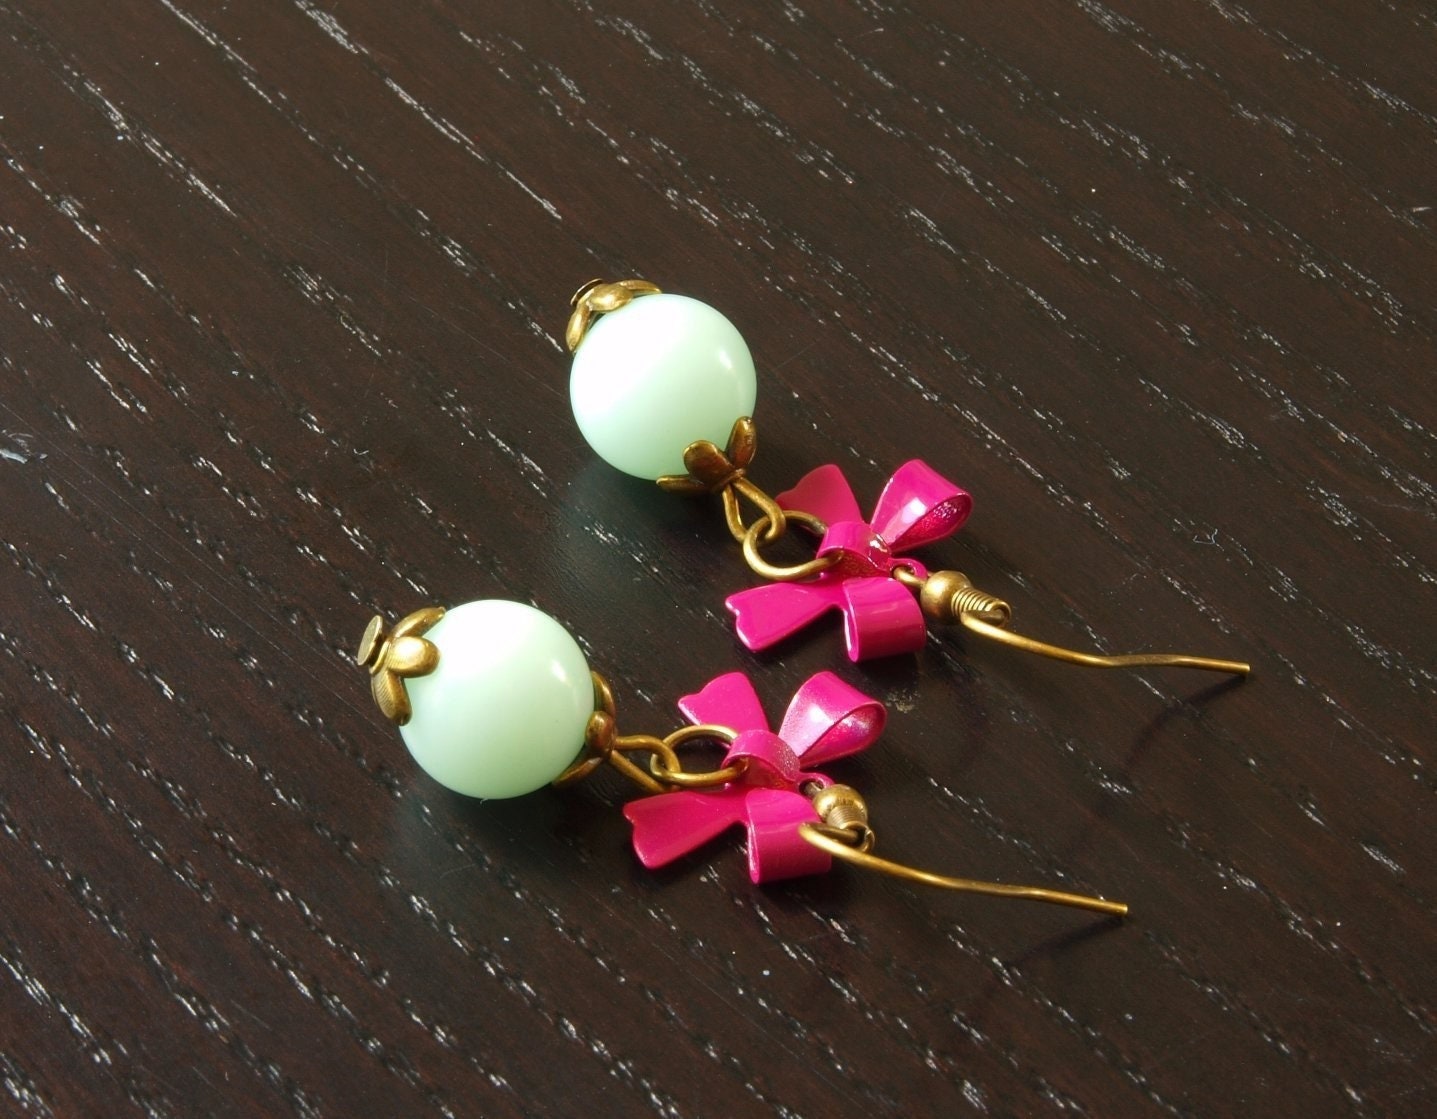 Ohrringe Perlen nach Wahl Jade Aventurin Koralle Achat rosa pink grün Blume Blüte Schleife